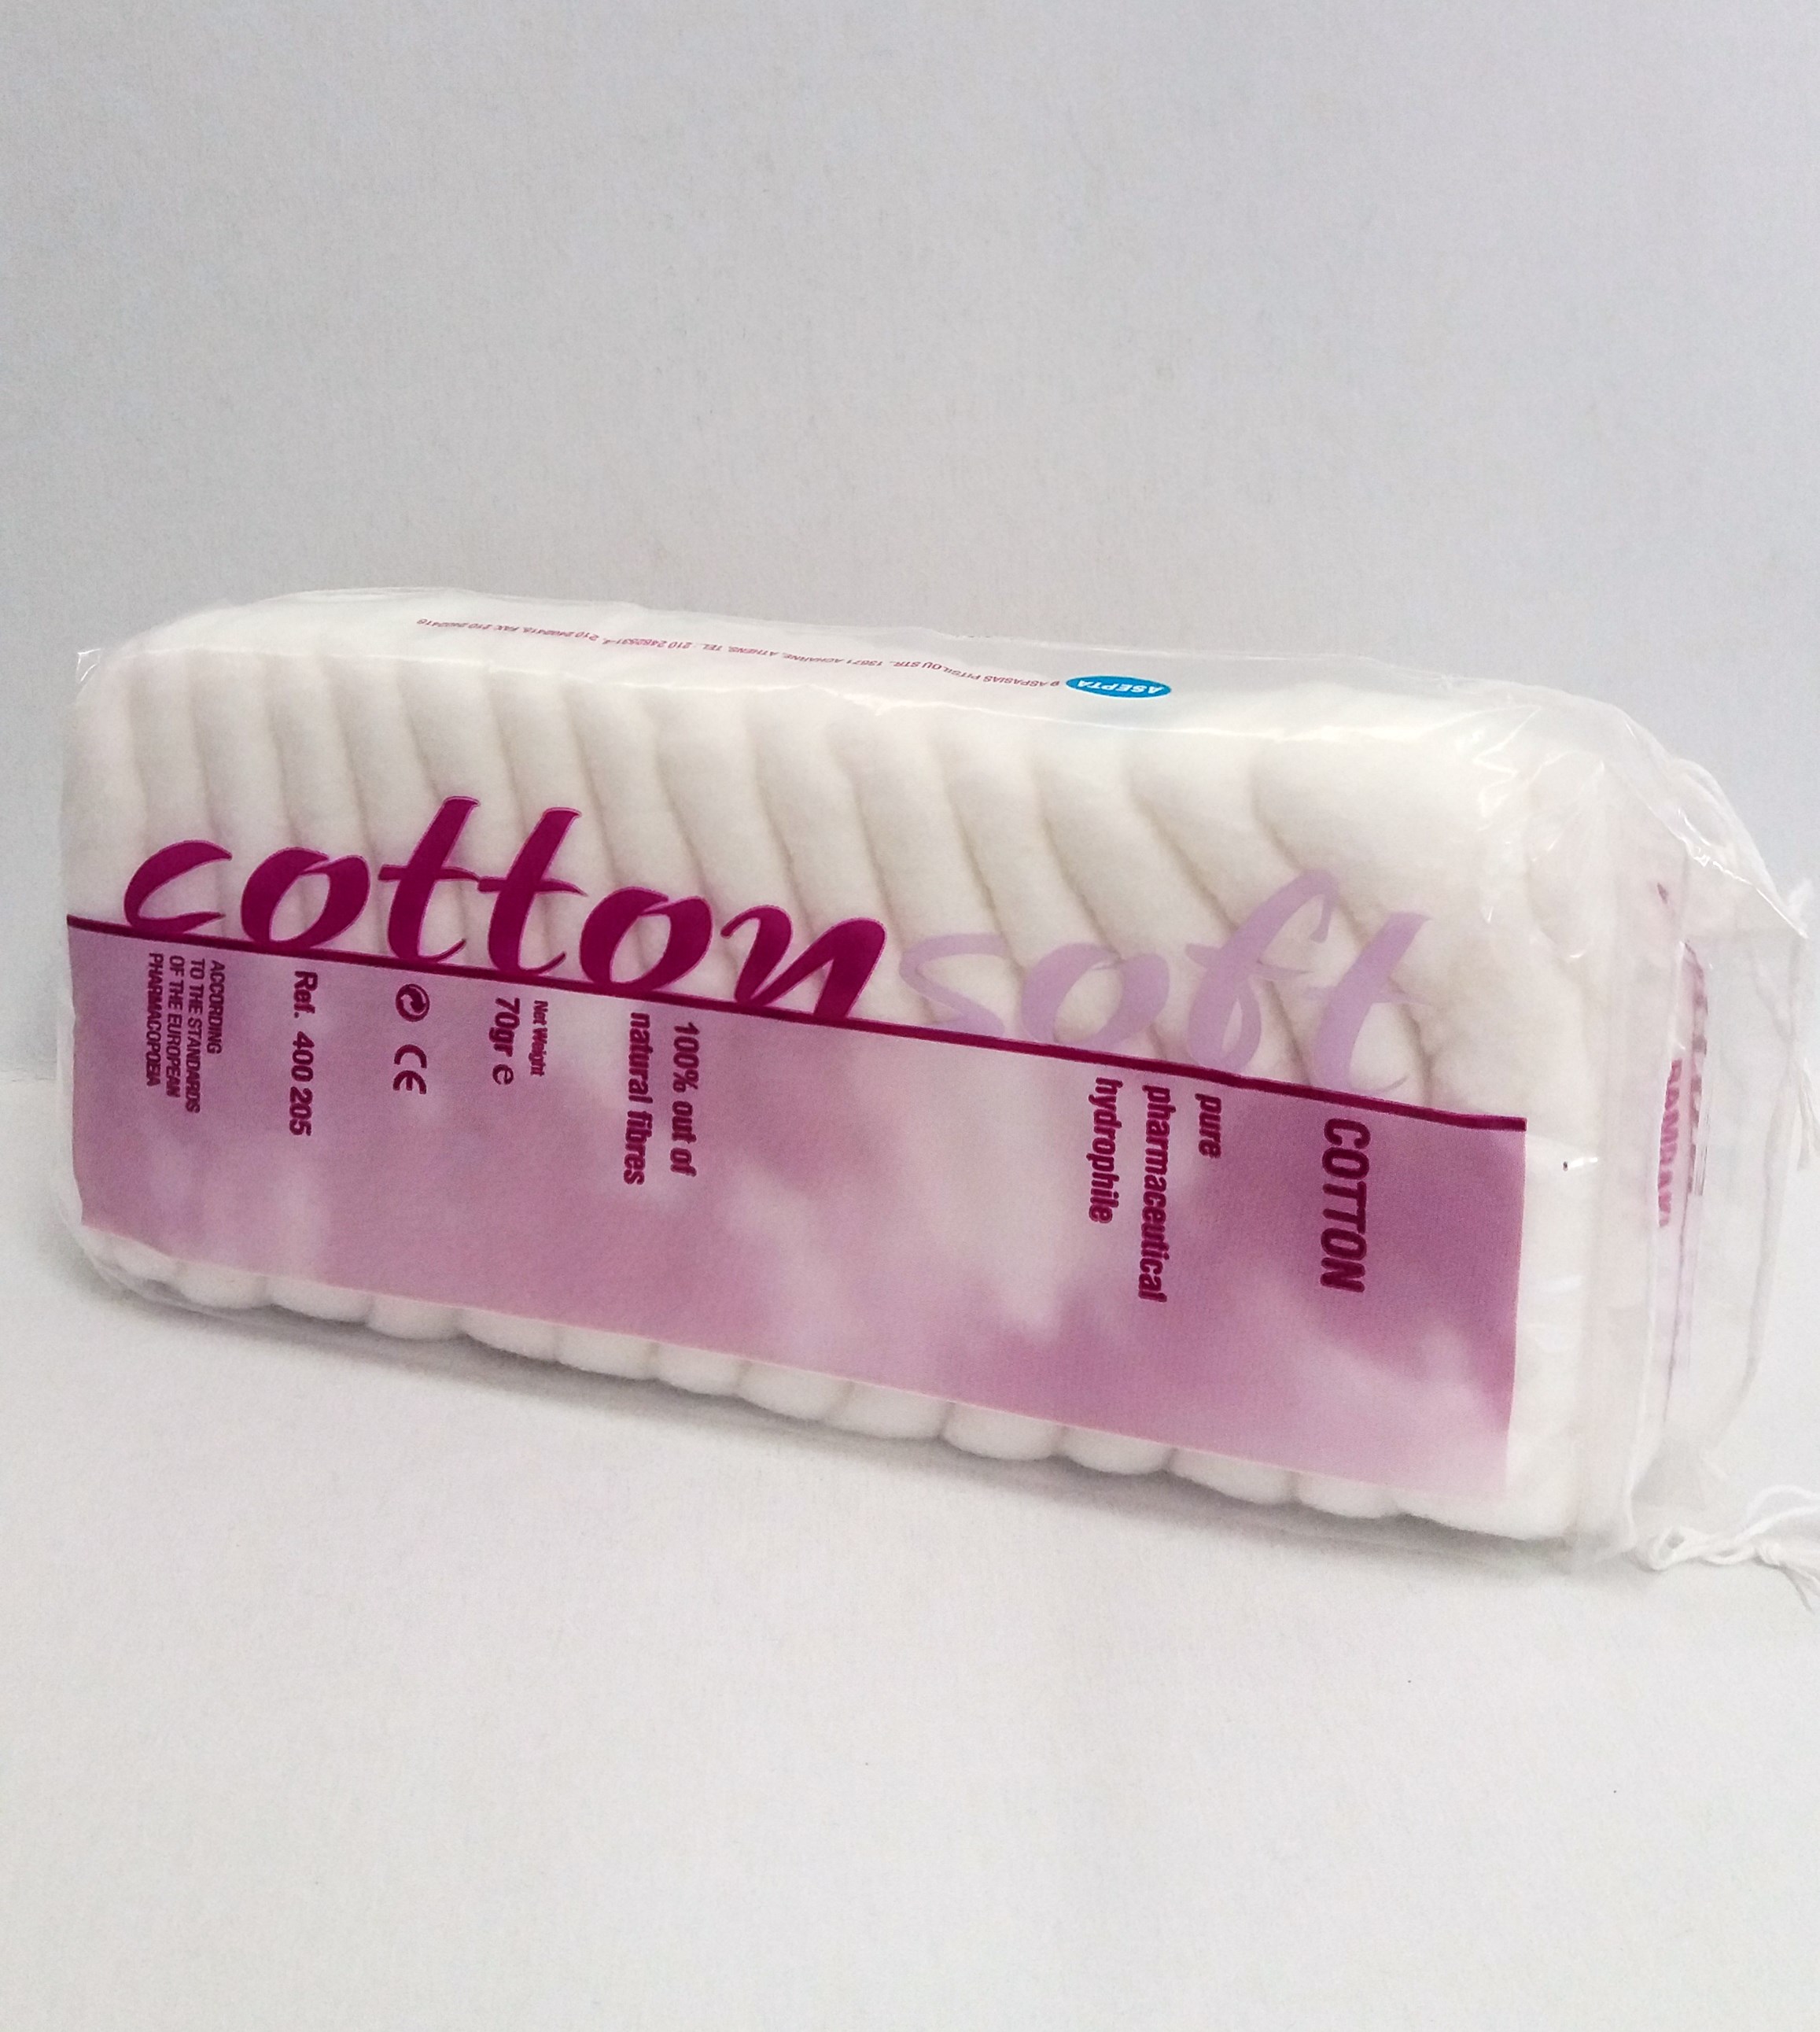 Cotton Cotoni, 70 gr